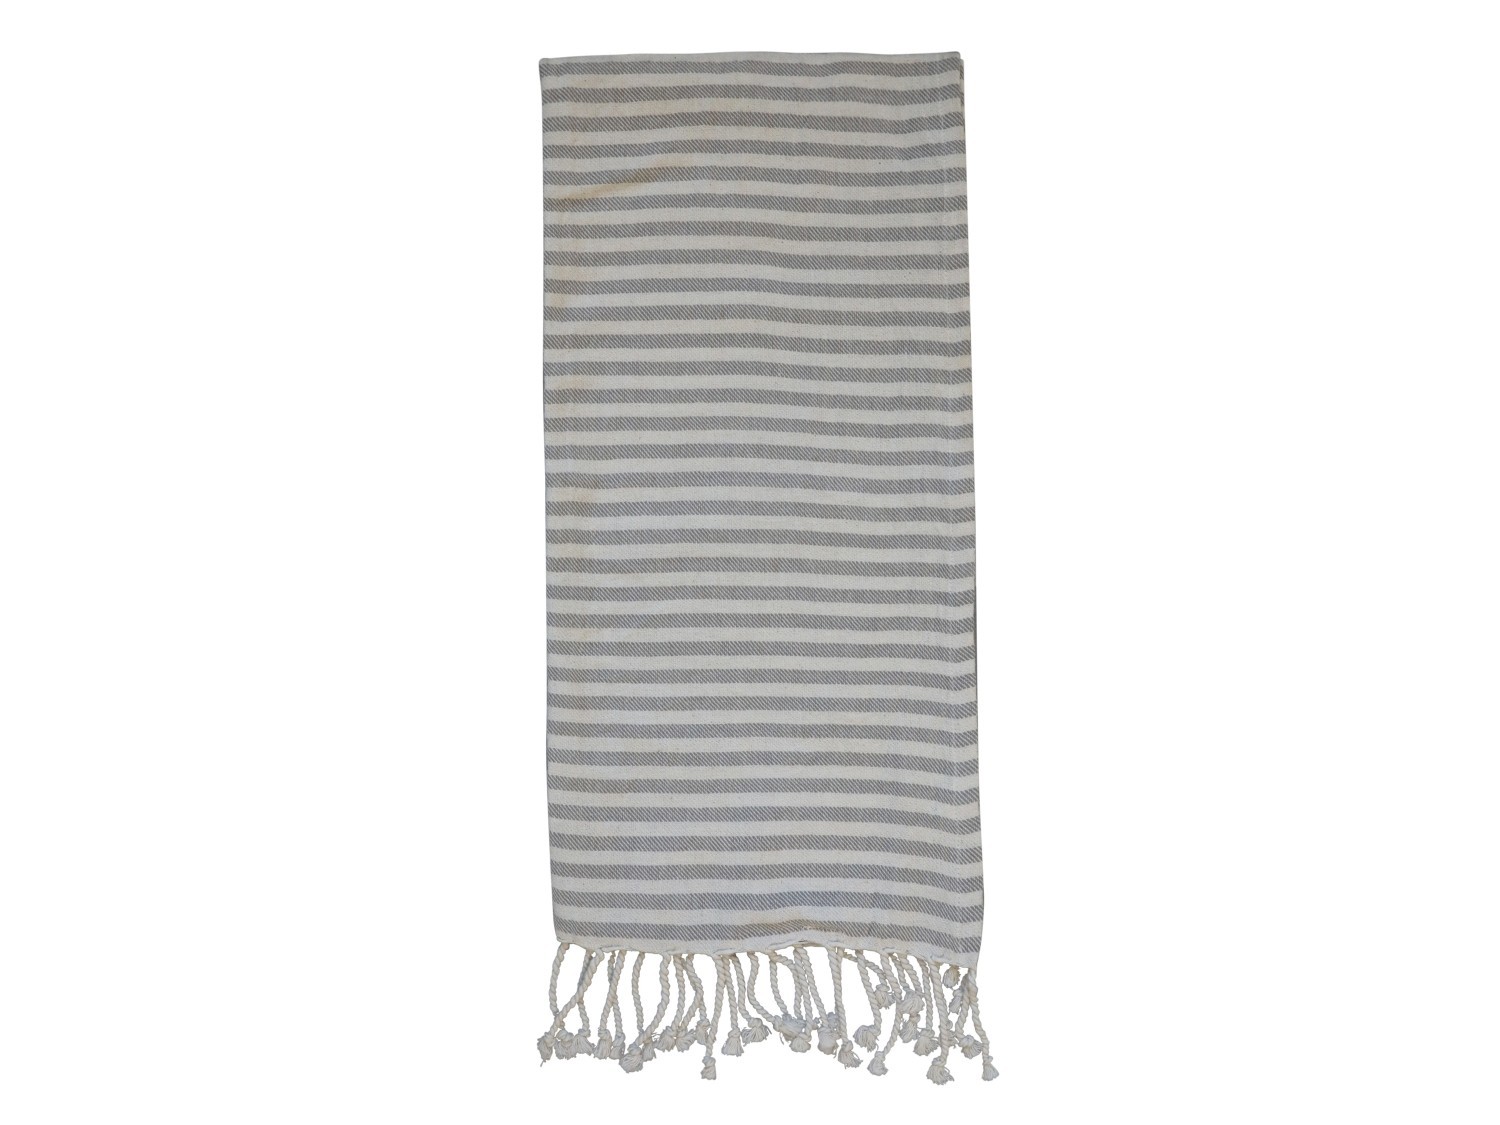 Slabounký bavlněný ručník / osuška se šedými pruhy a třásněmi Hammam - 90*180 cm Chic Antique